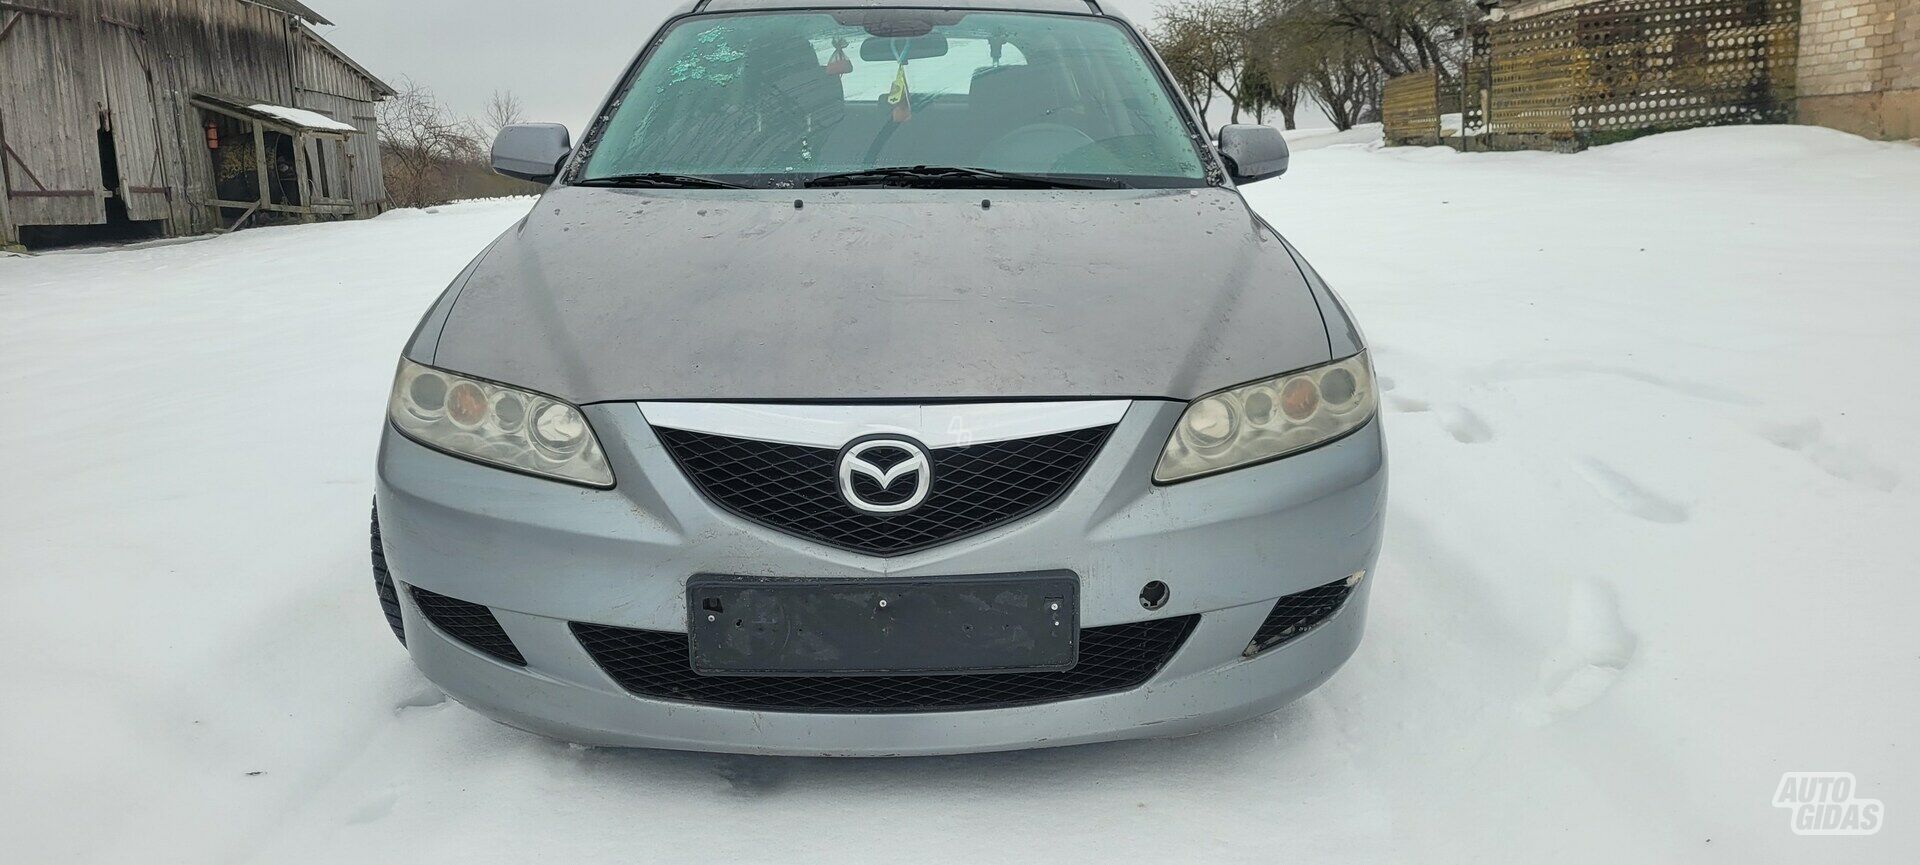 Mazda 6 I 2004 г запчясти